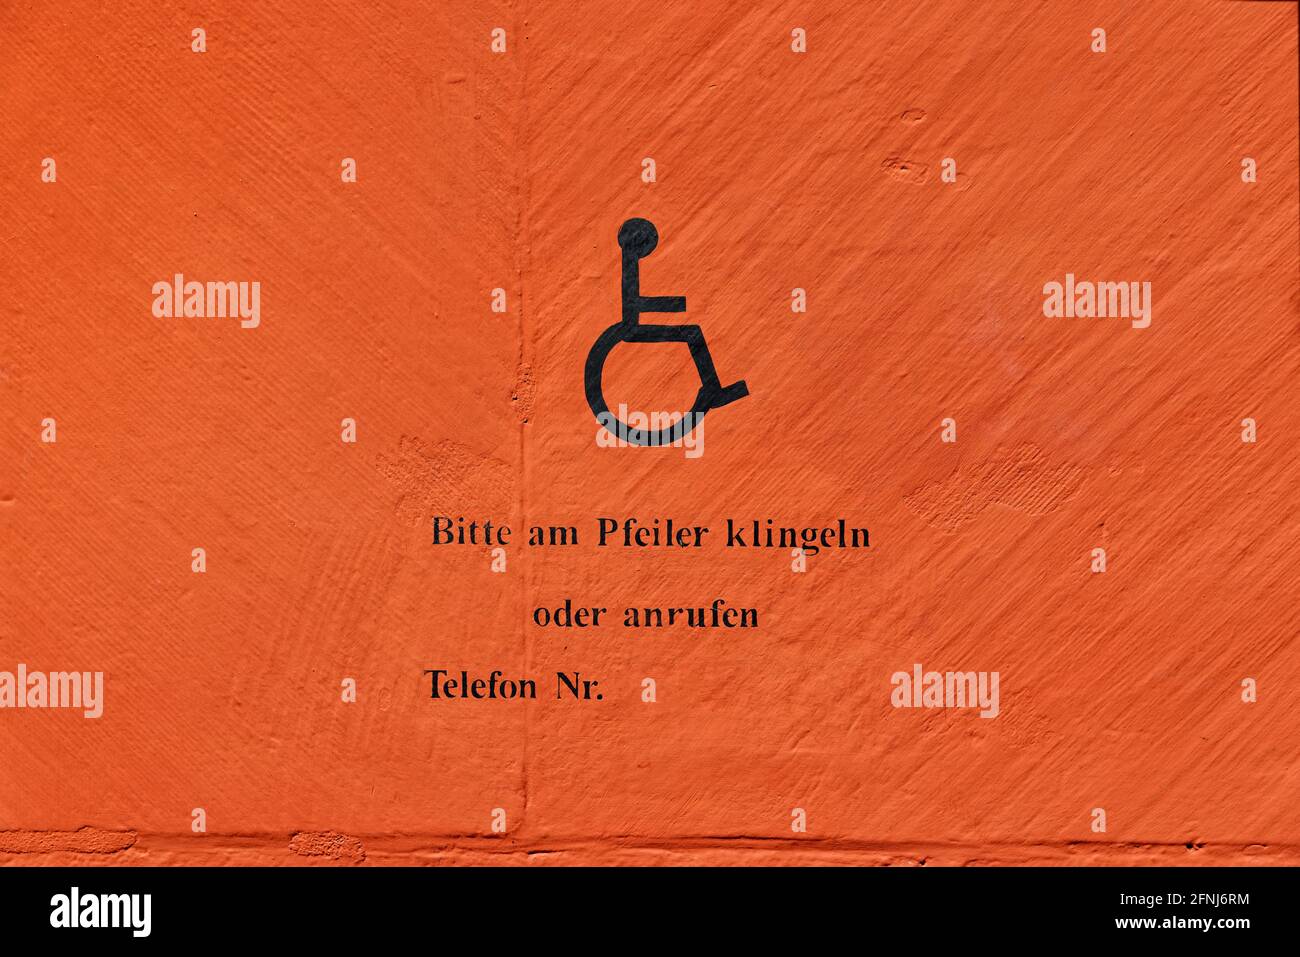 Symbole handicapé sur un mur orange avec texte allemand, traduction de texte allemand: Veuillez sonner à la poste ou appeler, numéro de téléphone Banque D'Images